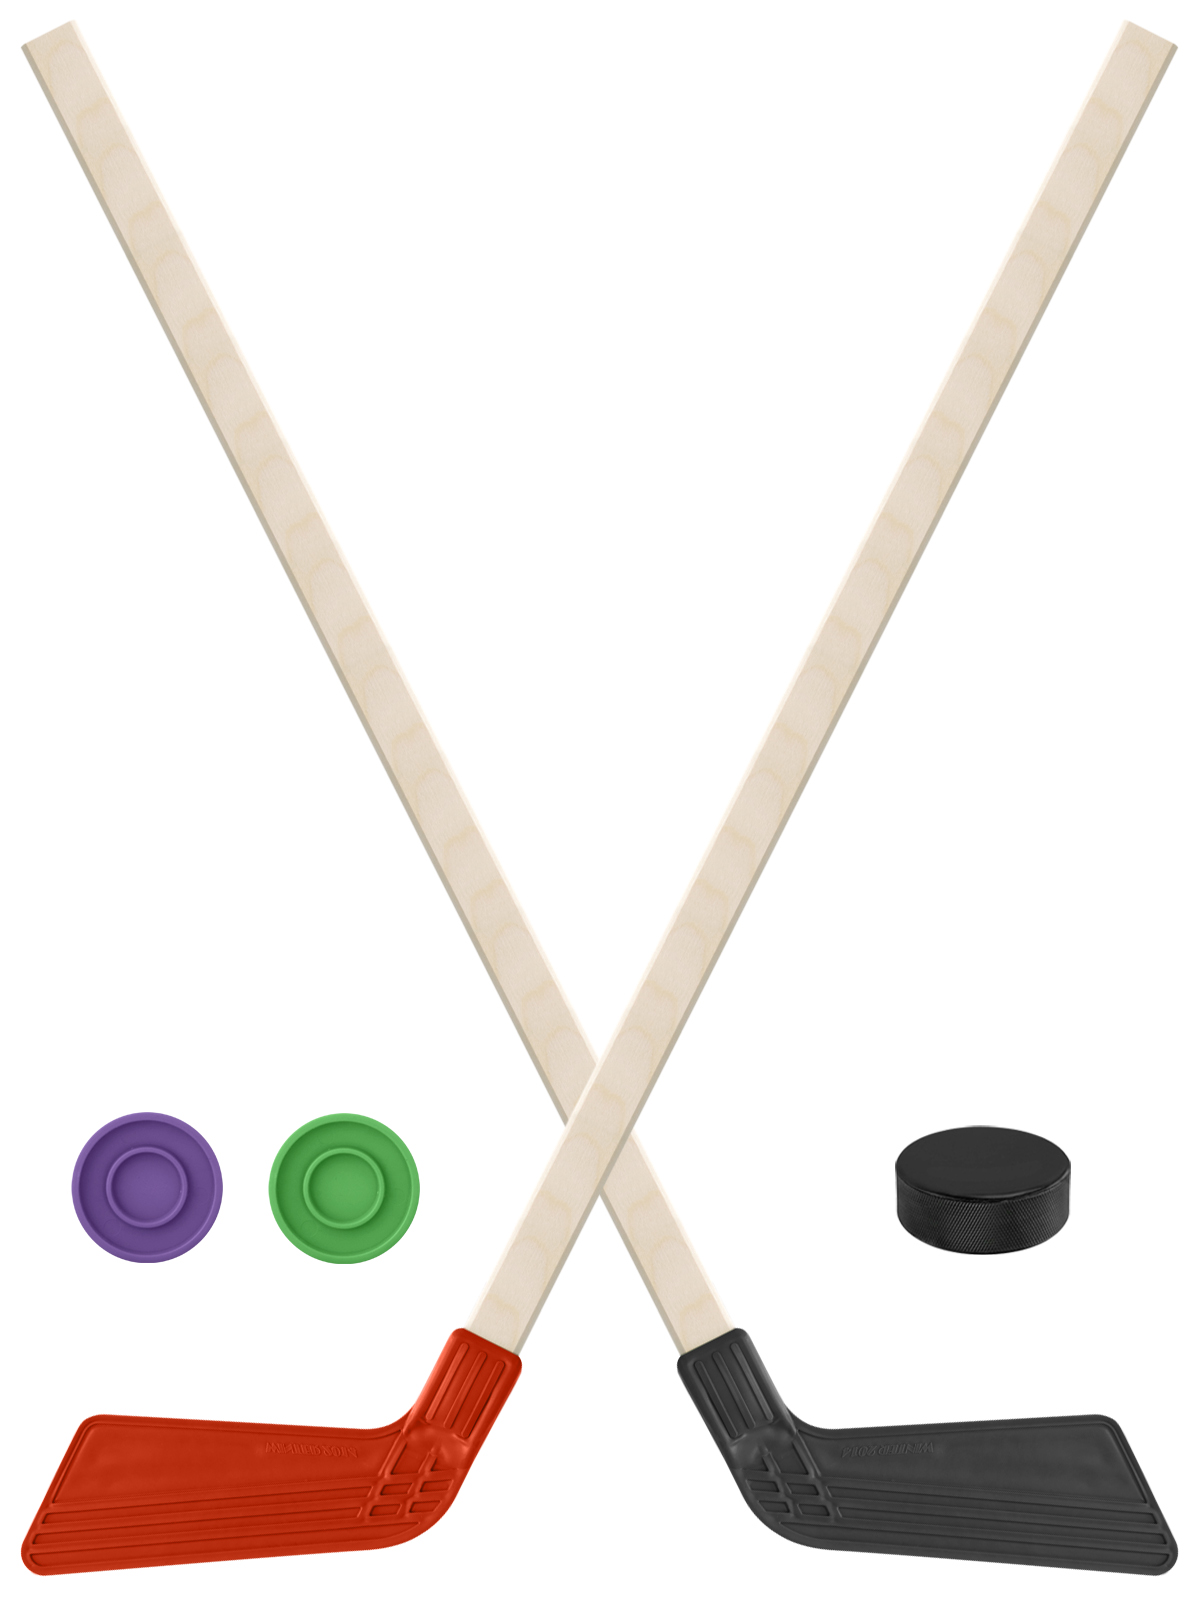 Детский хоккейный набор Задира-плюс Клюшка хоккейная 2шт(красн,чёрн) +2 шайбы+Шайба 60 мм клюшка флорбольная oxdog ultralight hes 29 uv 92 oval mbc правый